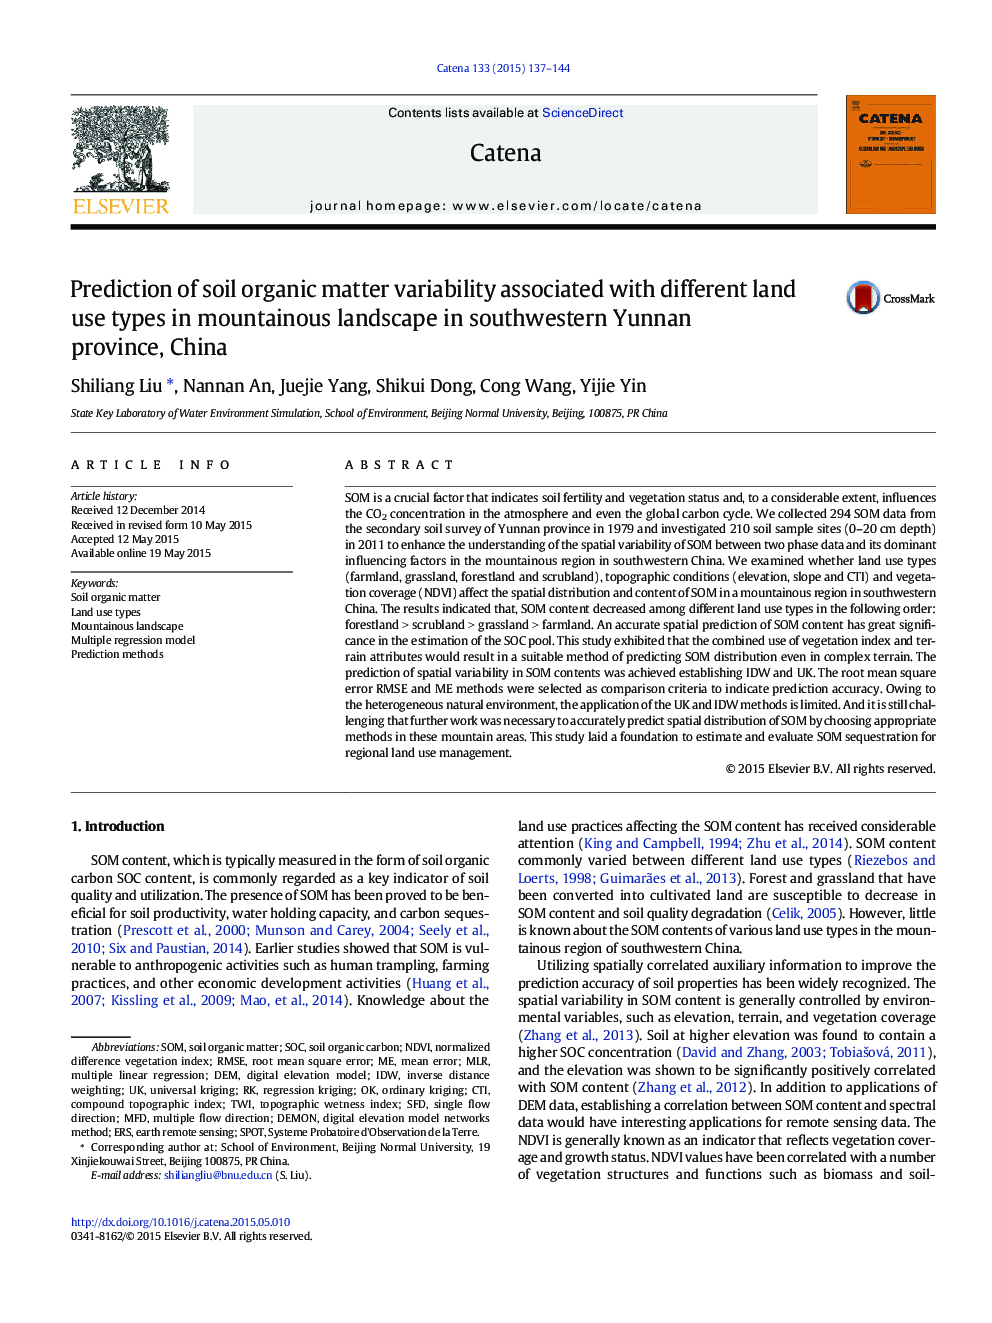 پیش بینی تغییرات مواد آلی خاک در ارتباط با انواع مختلف استفاده از اراضی در چشم انداز کوهستانی در جنوب غربی یوننان، چین 